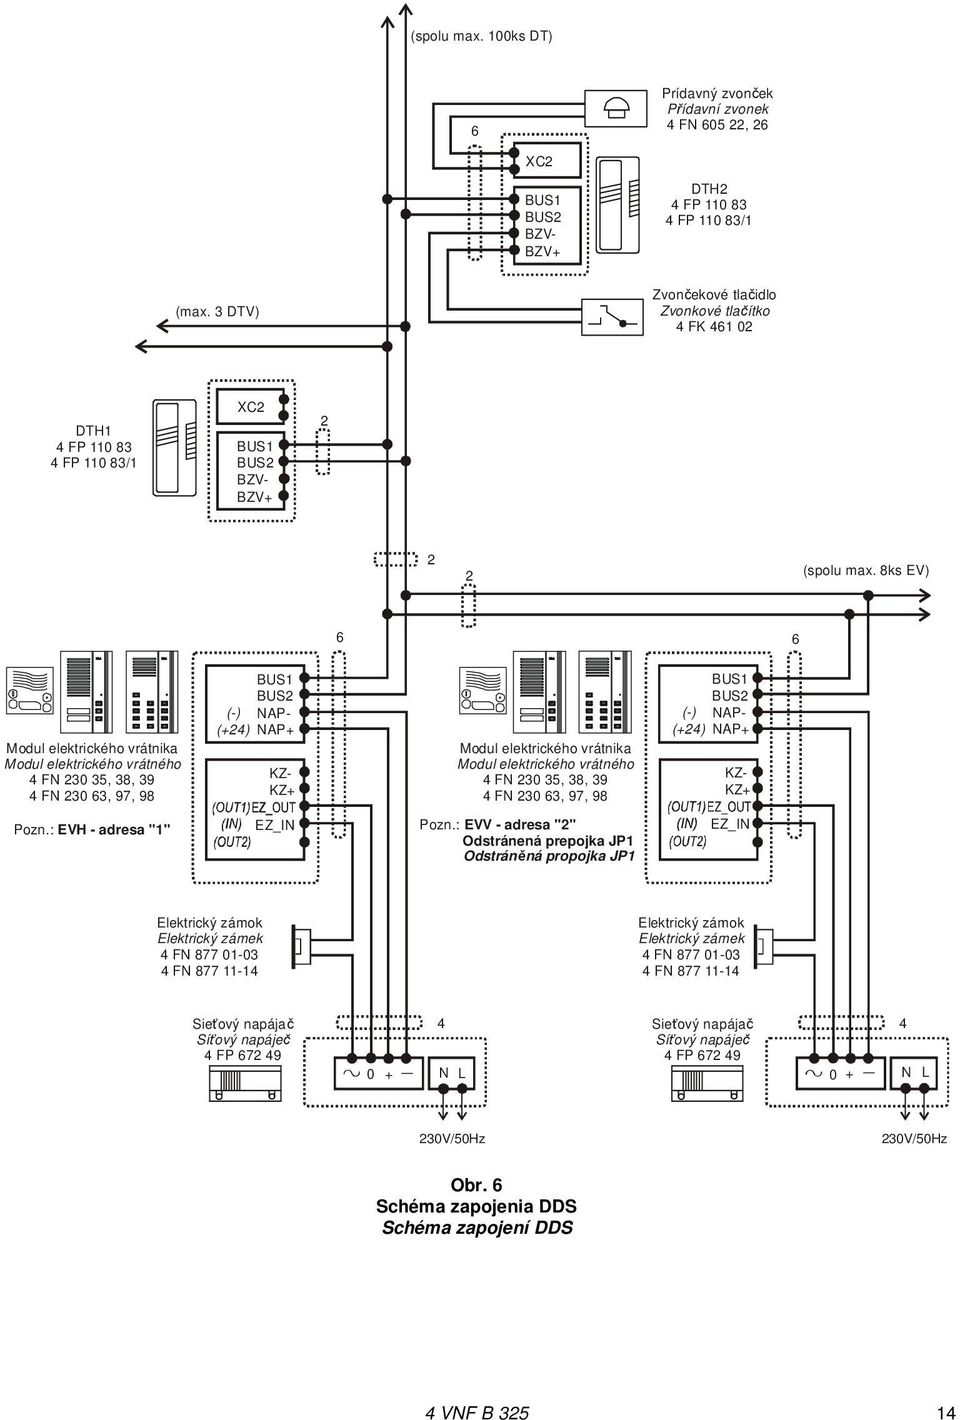 8ks EV) 6 6 Modul elektrického vrátnika Modul elektrického vrátného 4 FN 230 35, 38, 39 4 FN 230 63, 97, 98 KZ- KZ+ BUS1 BUS2 (-) NAP- (+24) NAP+ Modul elektrického vrátnika Modul elektrického